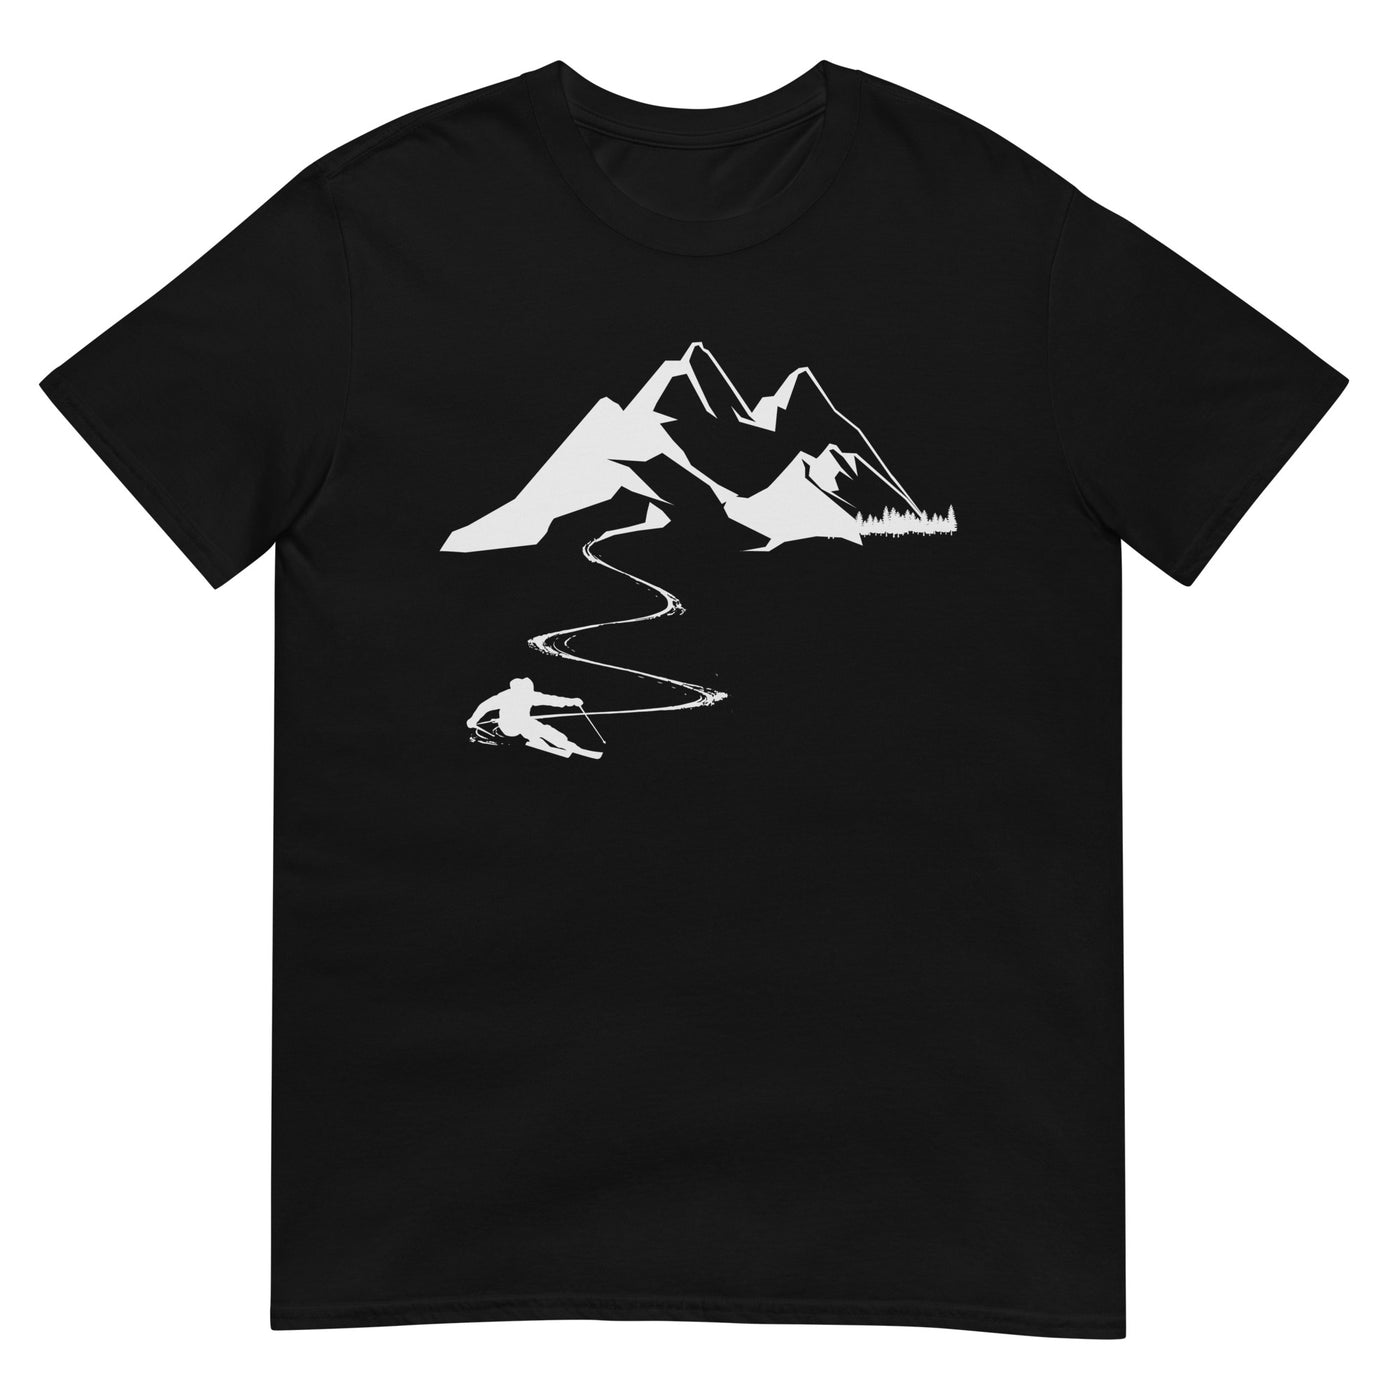 Skisüchtig - T-Shirt (Unisex) klettern ski xxx yyy zzz Black